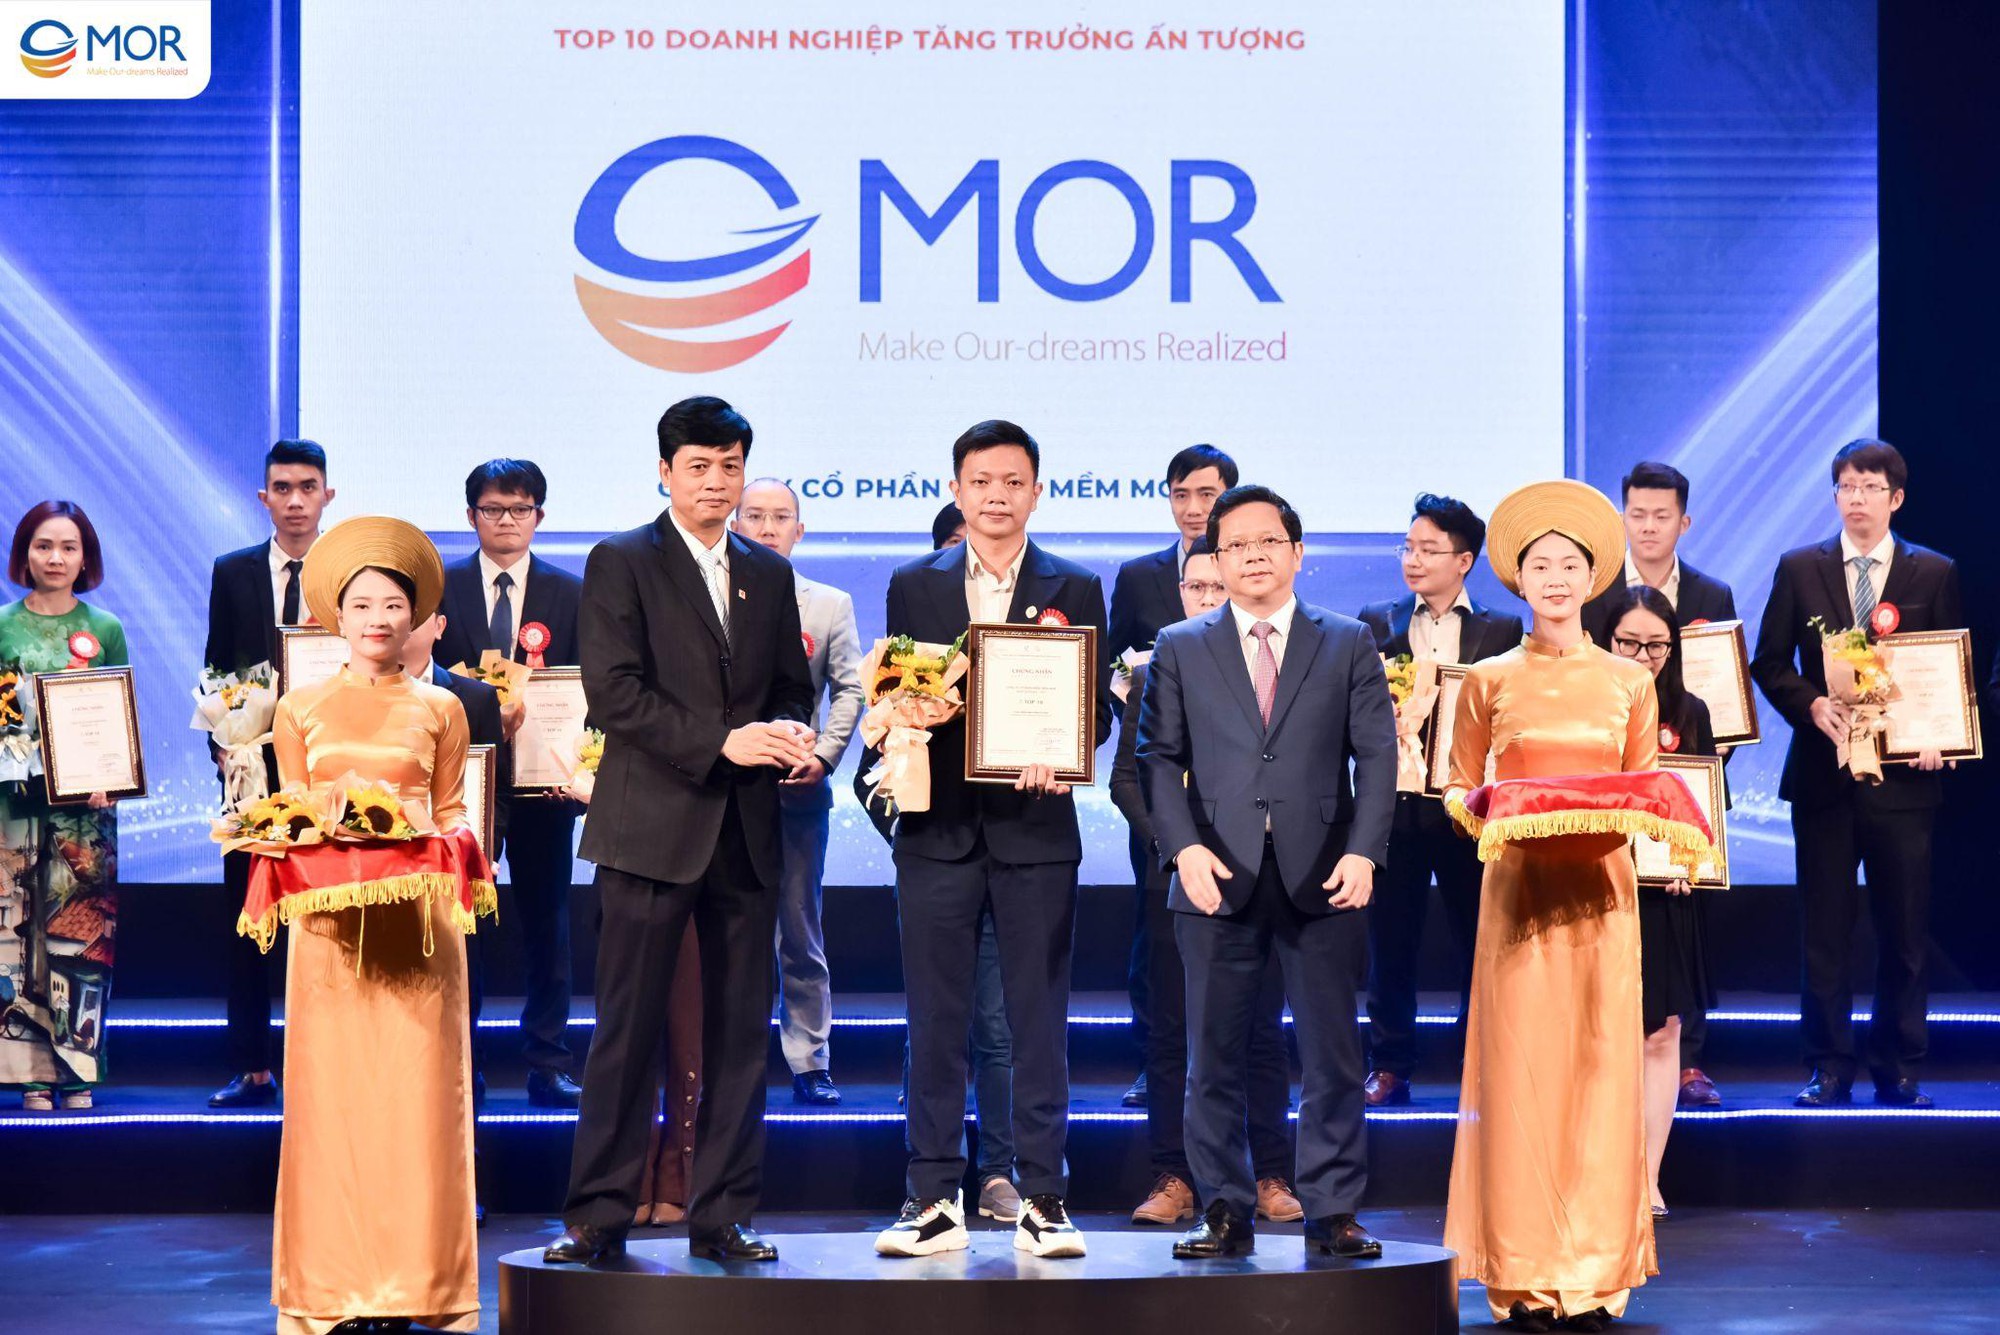 Liên minh doanh nghiệp công nghệ Việt cùng nhau “mở cõi” tại thị trường Hàn Quốc - Ảnh 2.